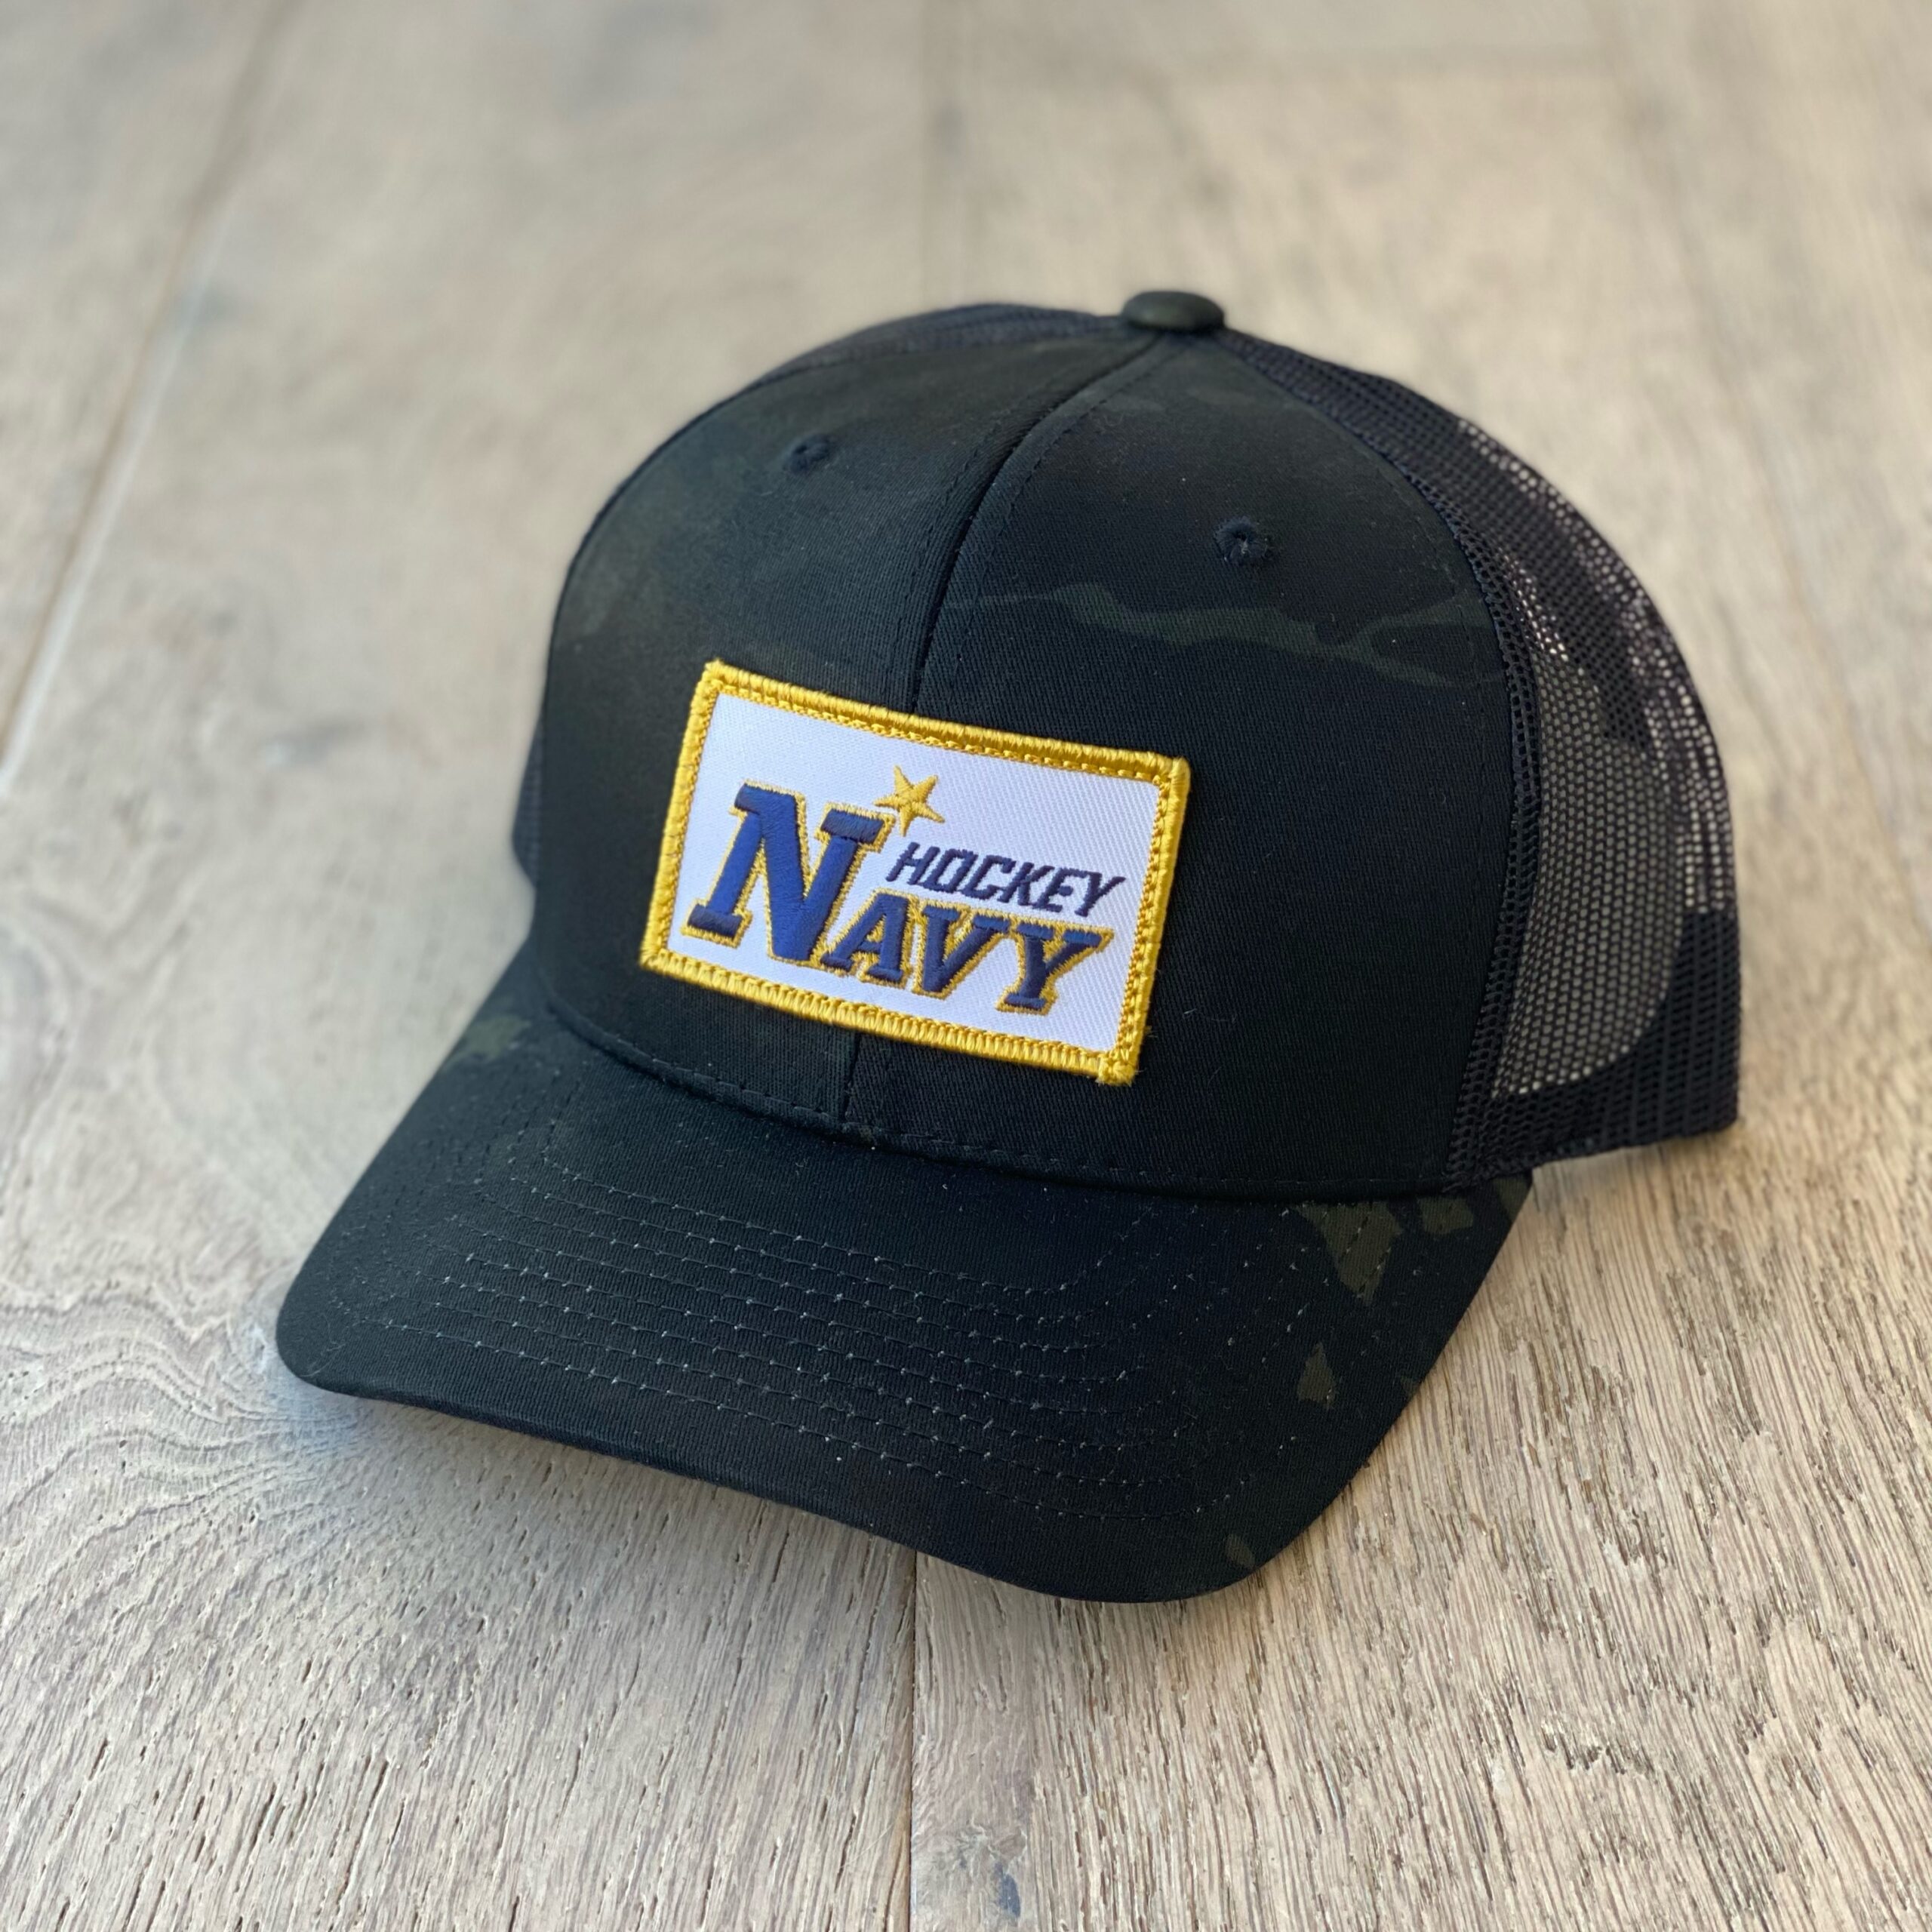 NHL Men's Caps - Navy